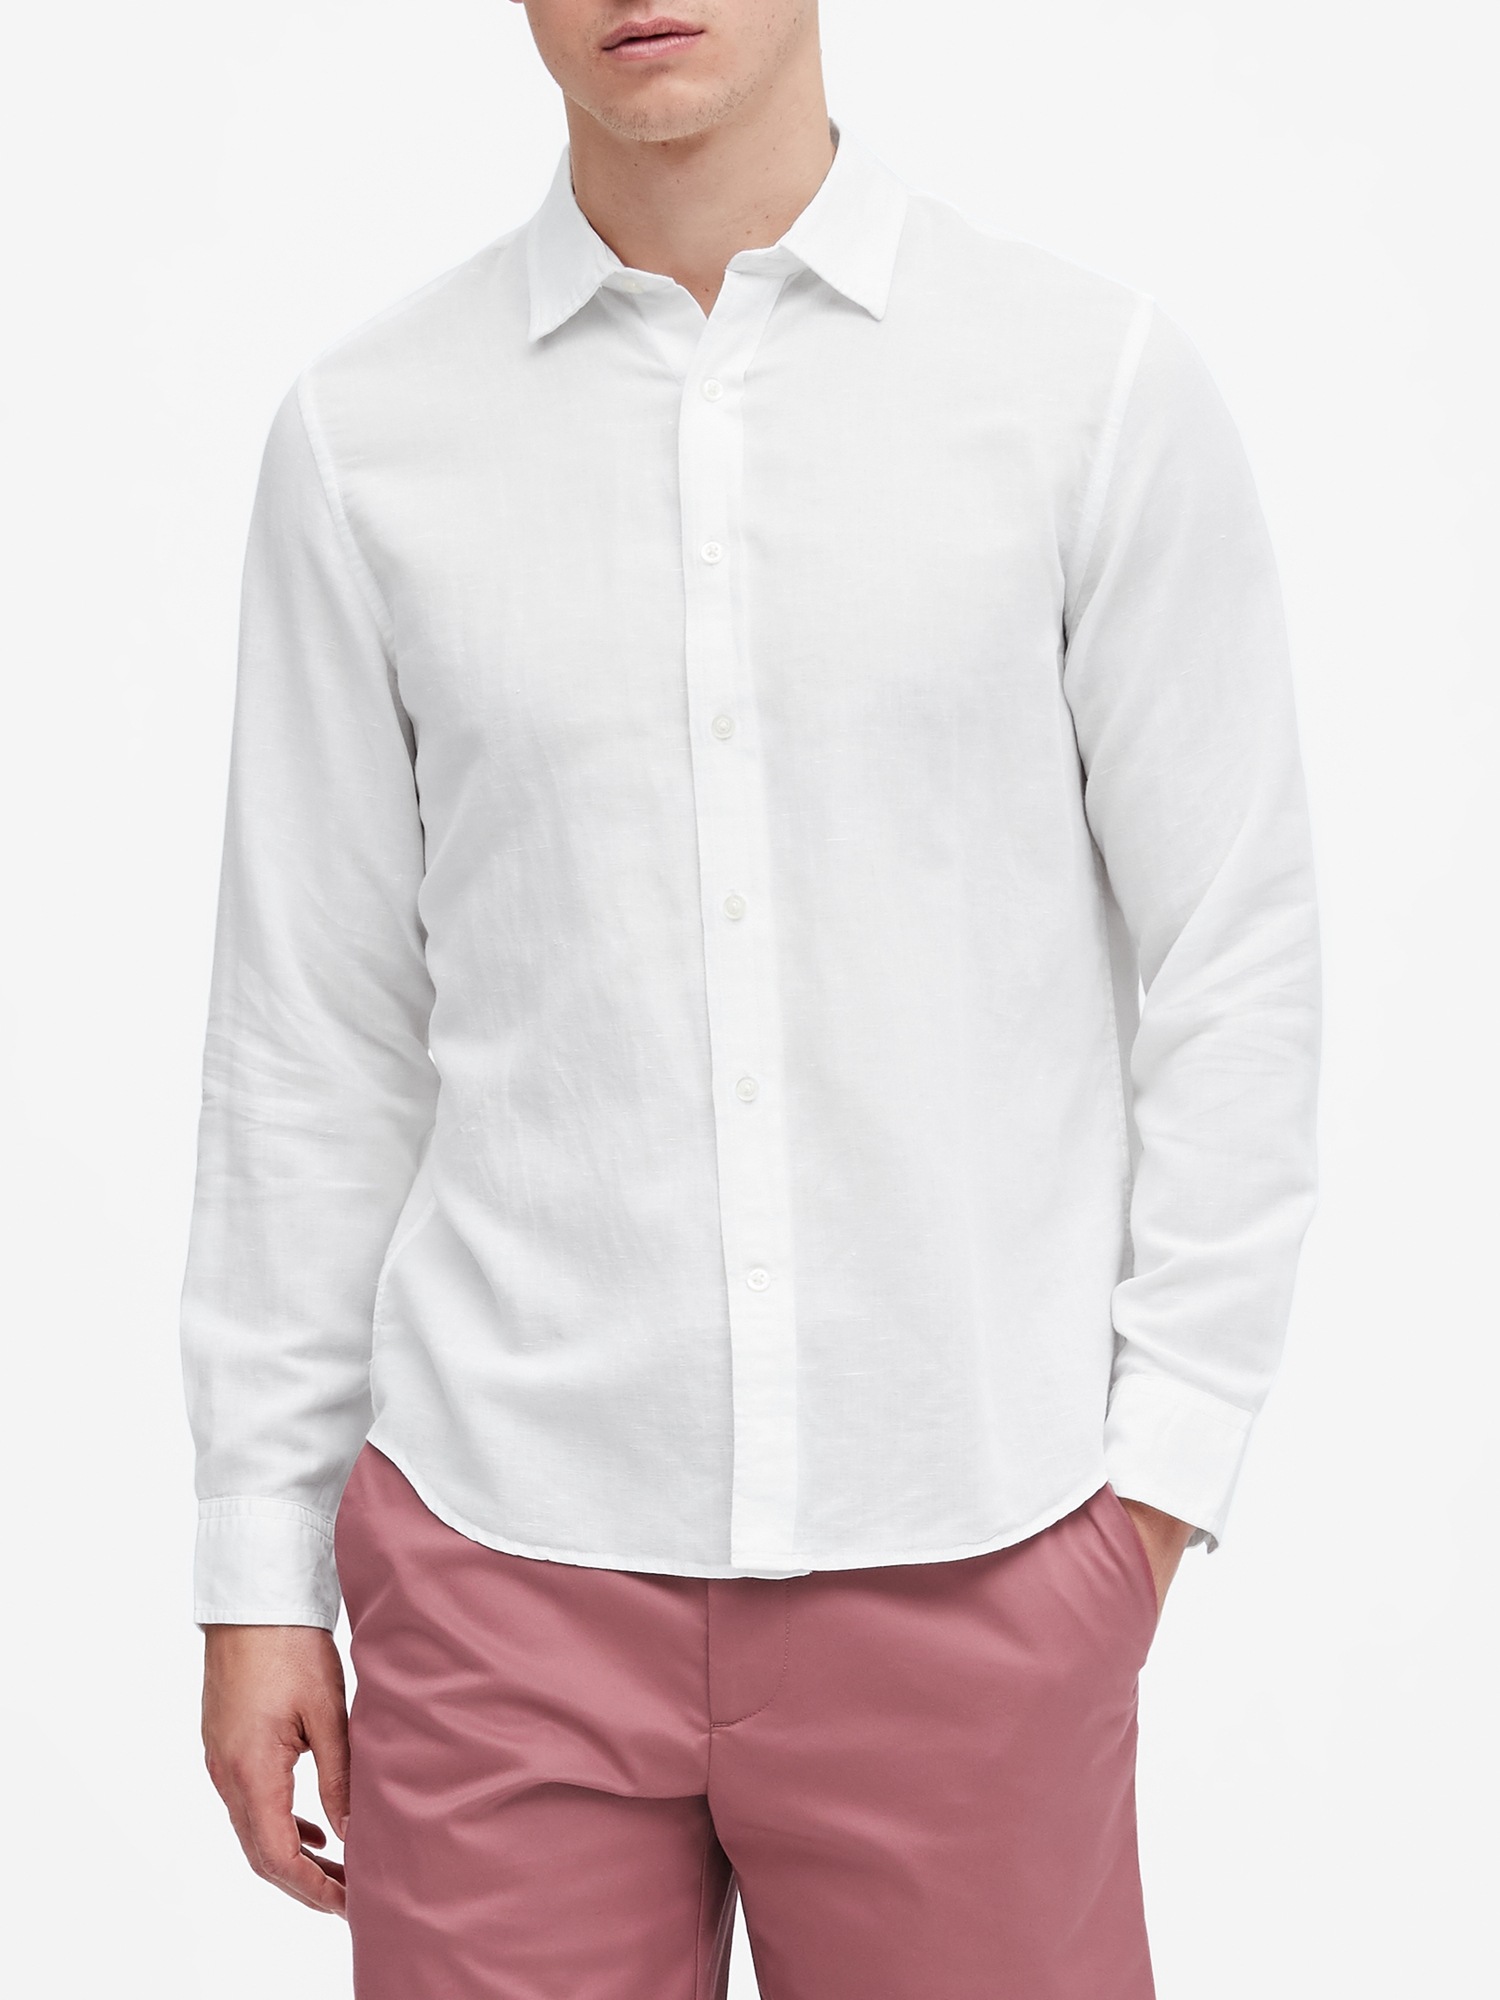 Untucked Standard-Fit Linen-Cotton Shirt